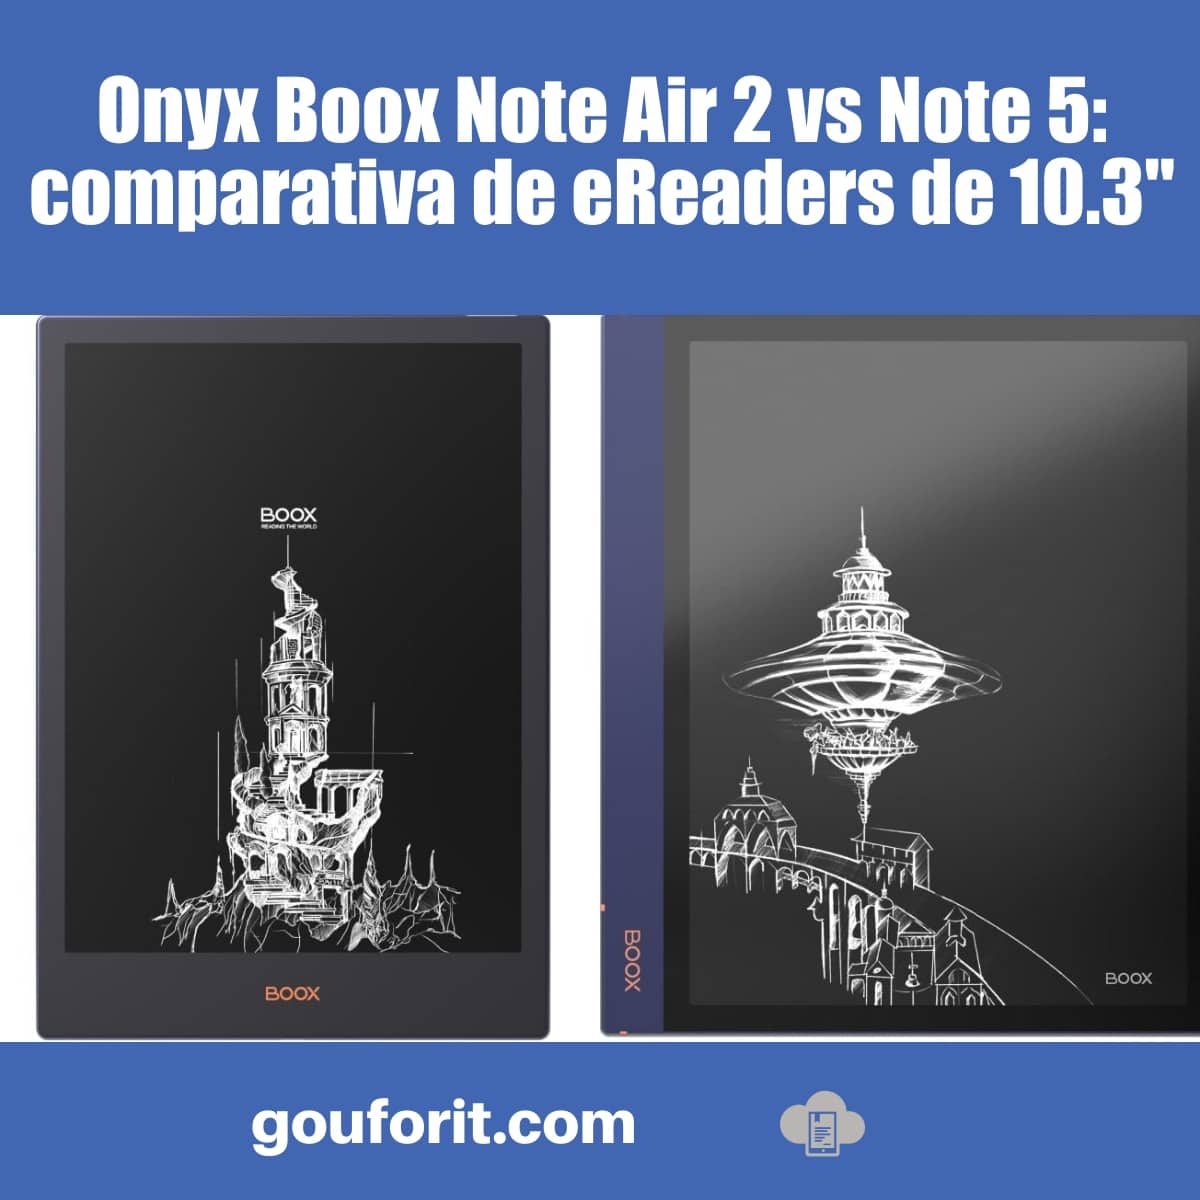 Onyx Boox Note Air 2 vs Note 5: comparativa de eReaders de 10.3"